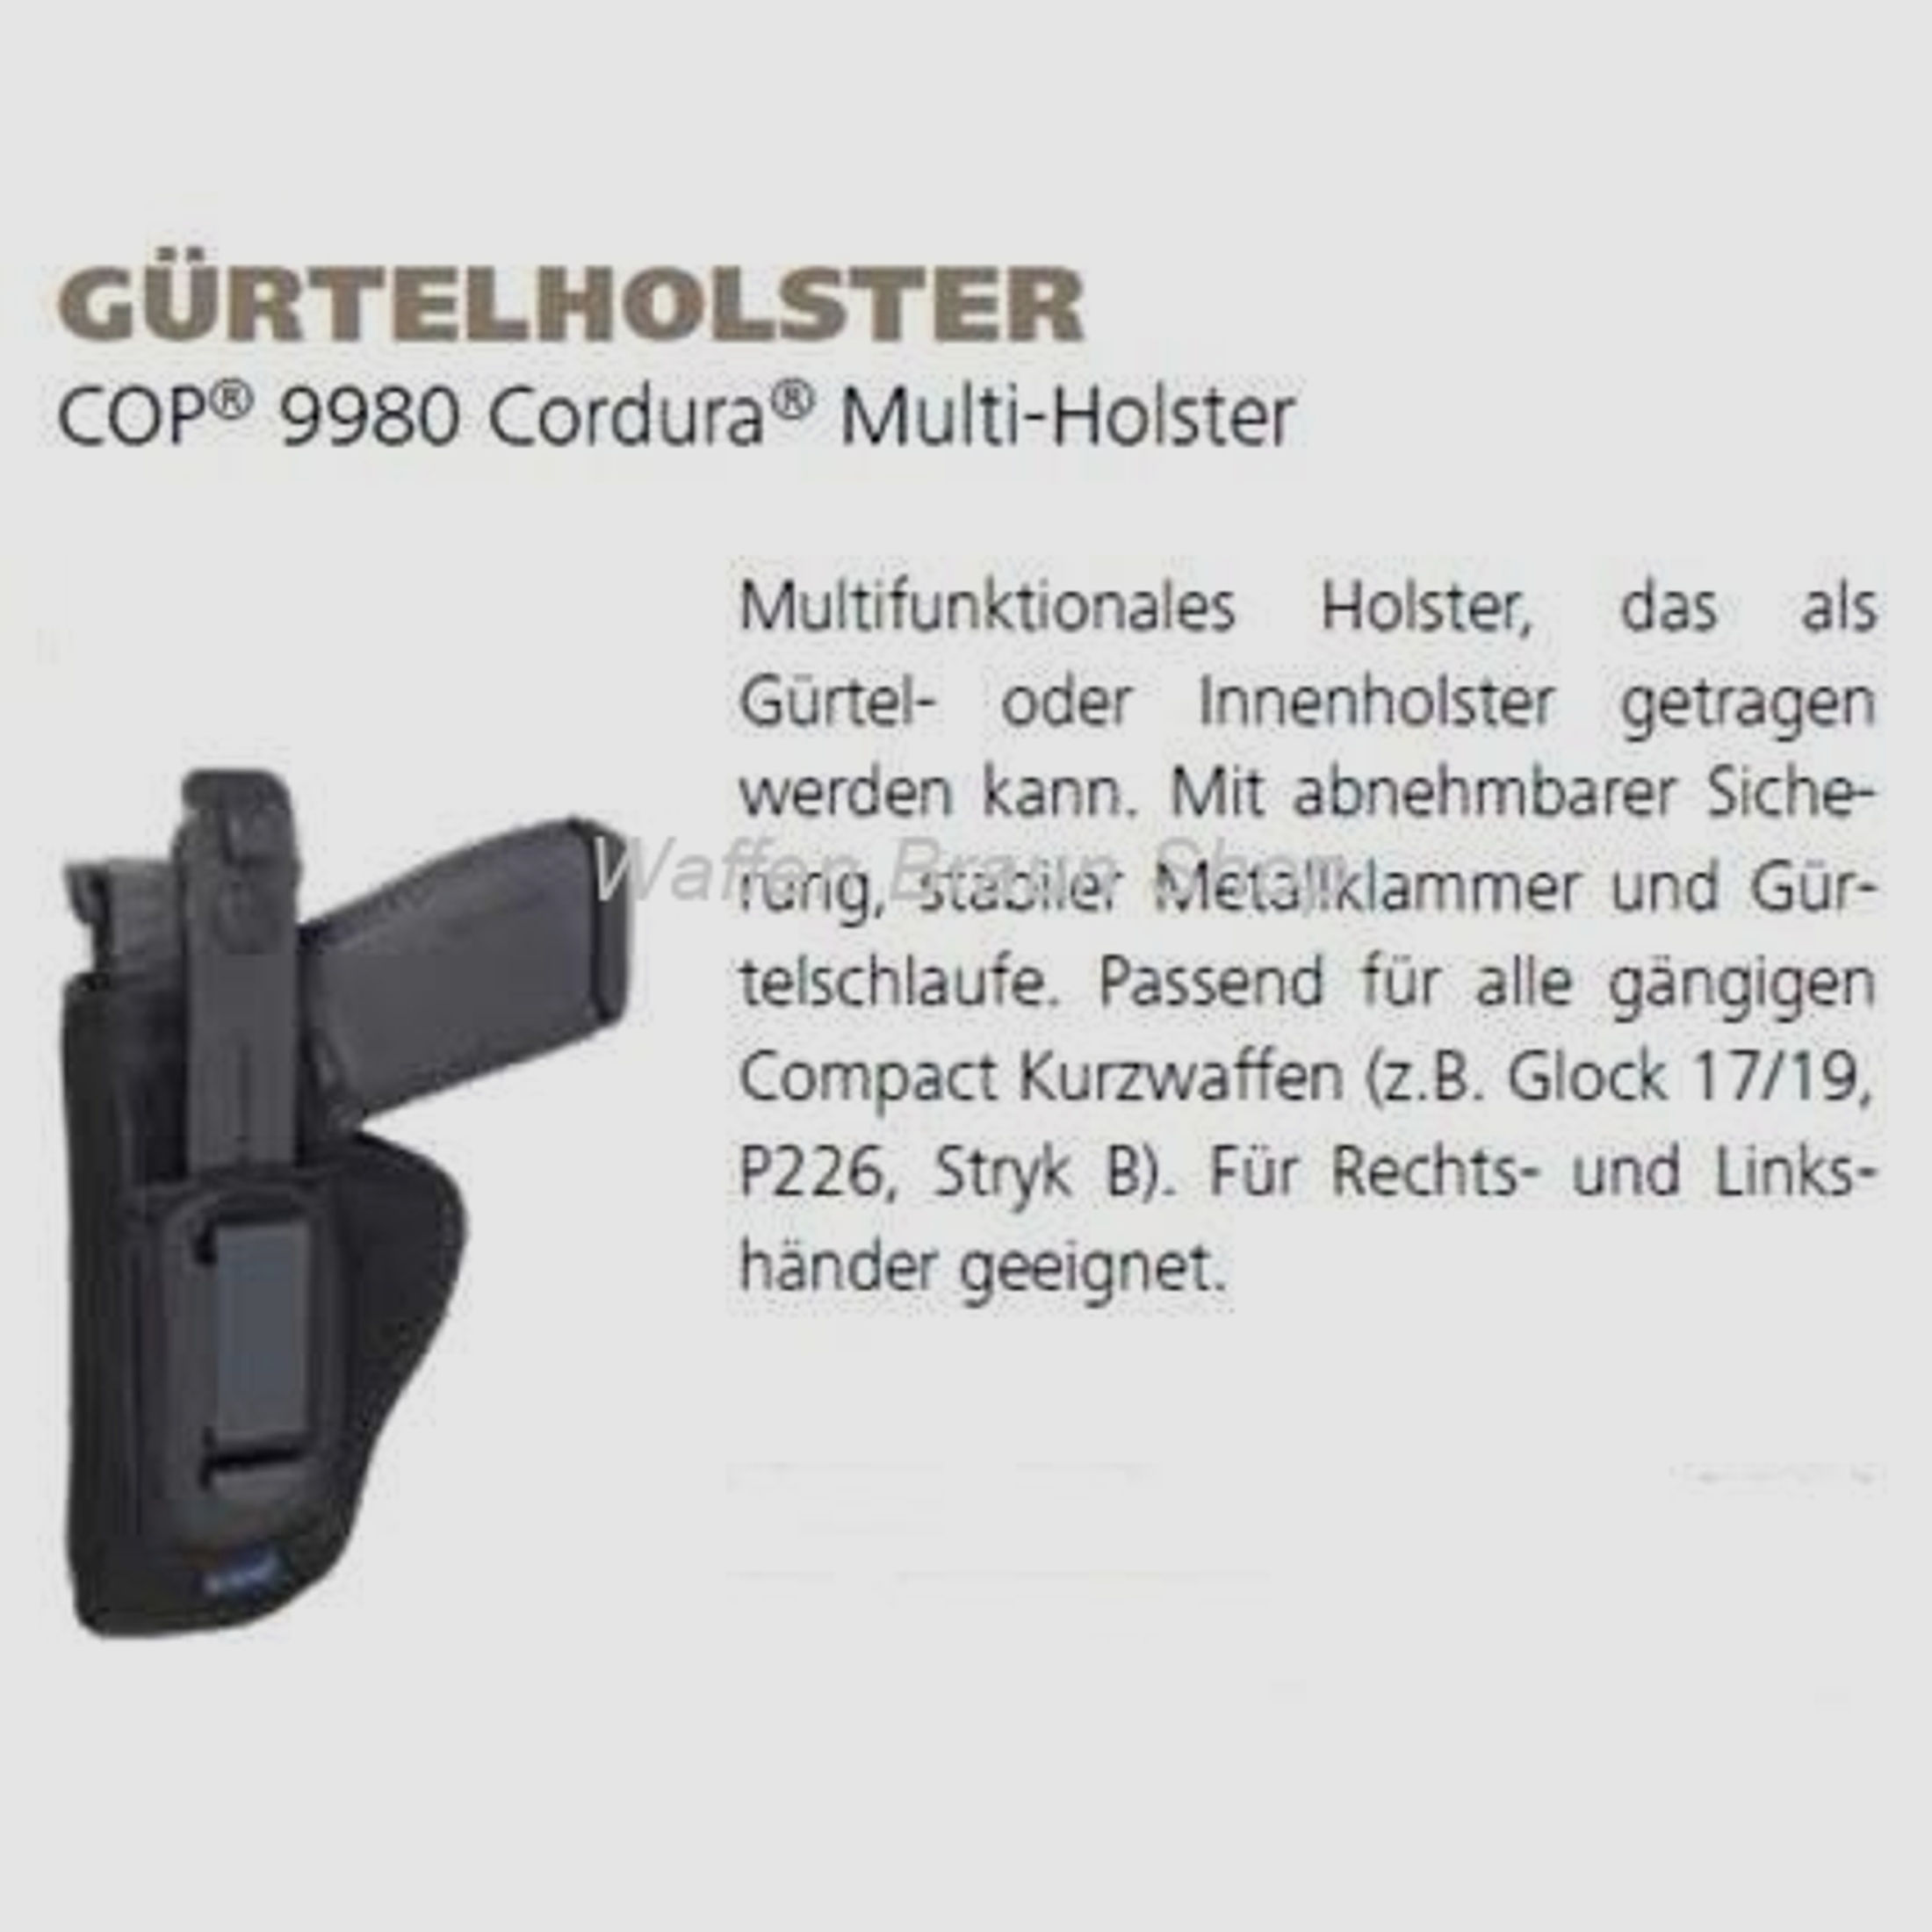 Gürtelholster COP® Cordura® Multi-Holster für alle gängigen Compakt Kurzwaffen